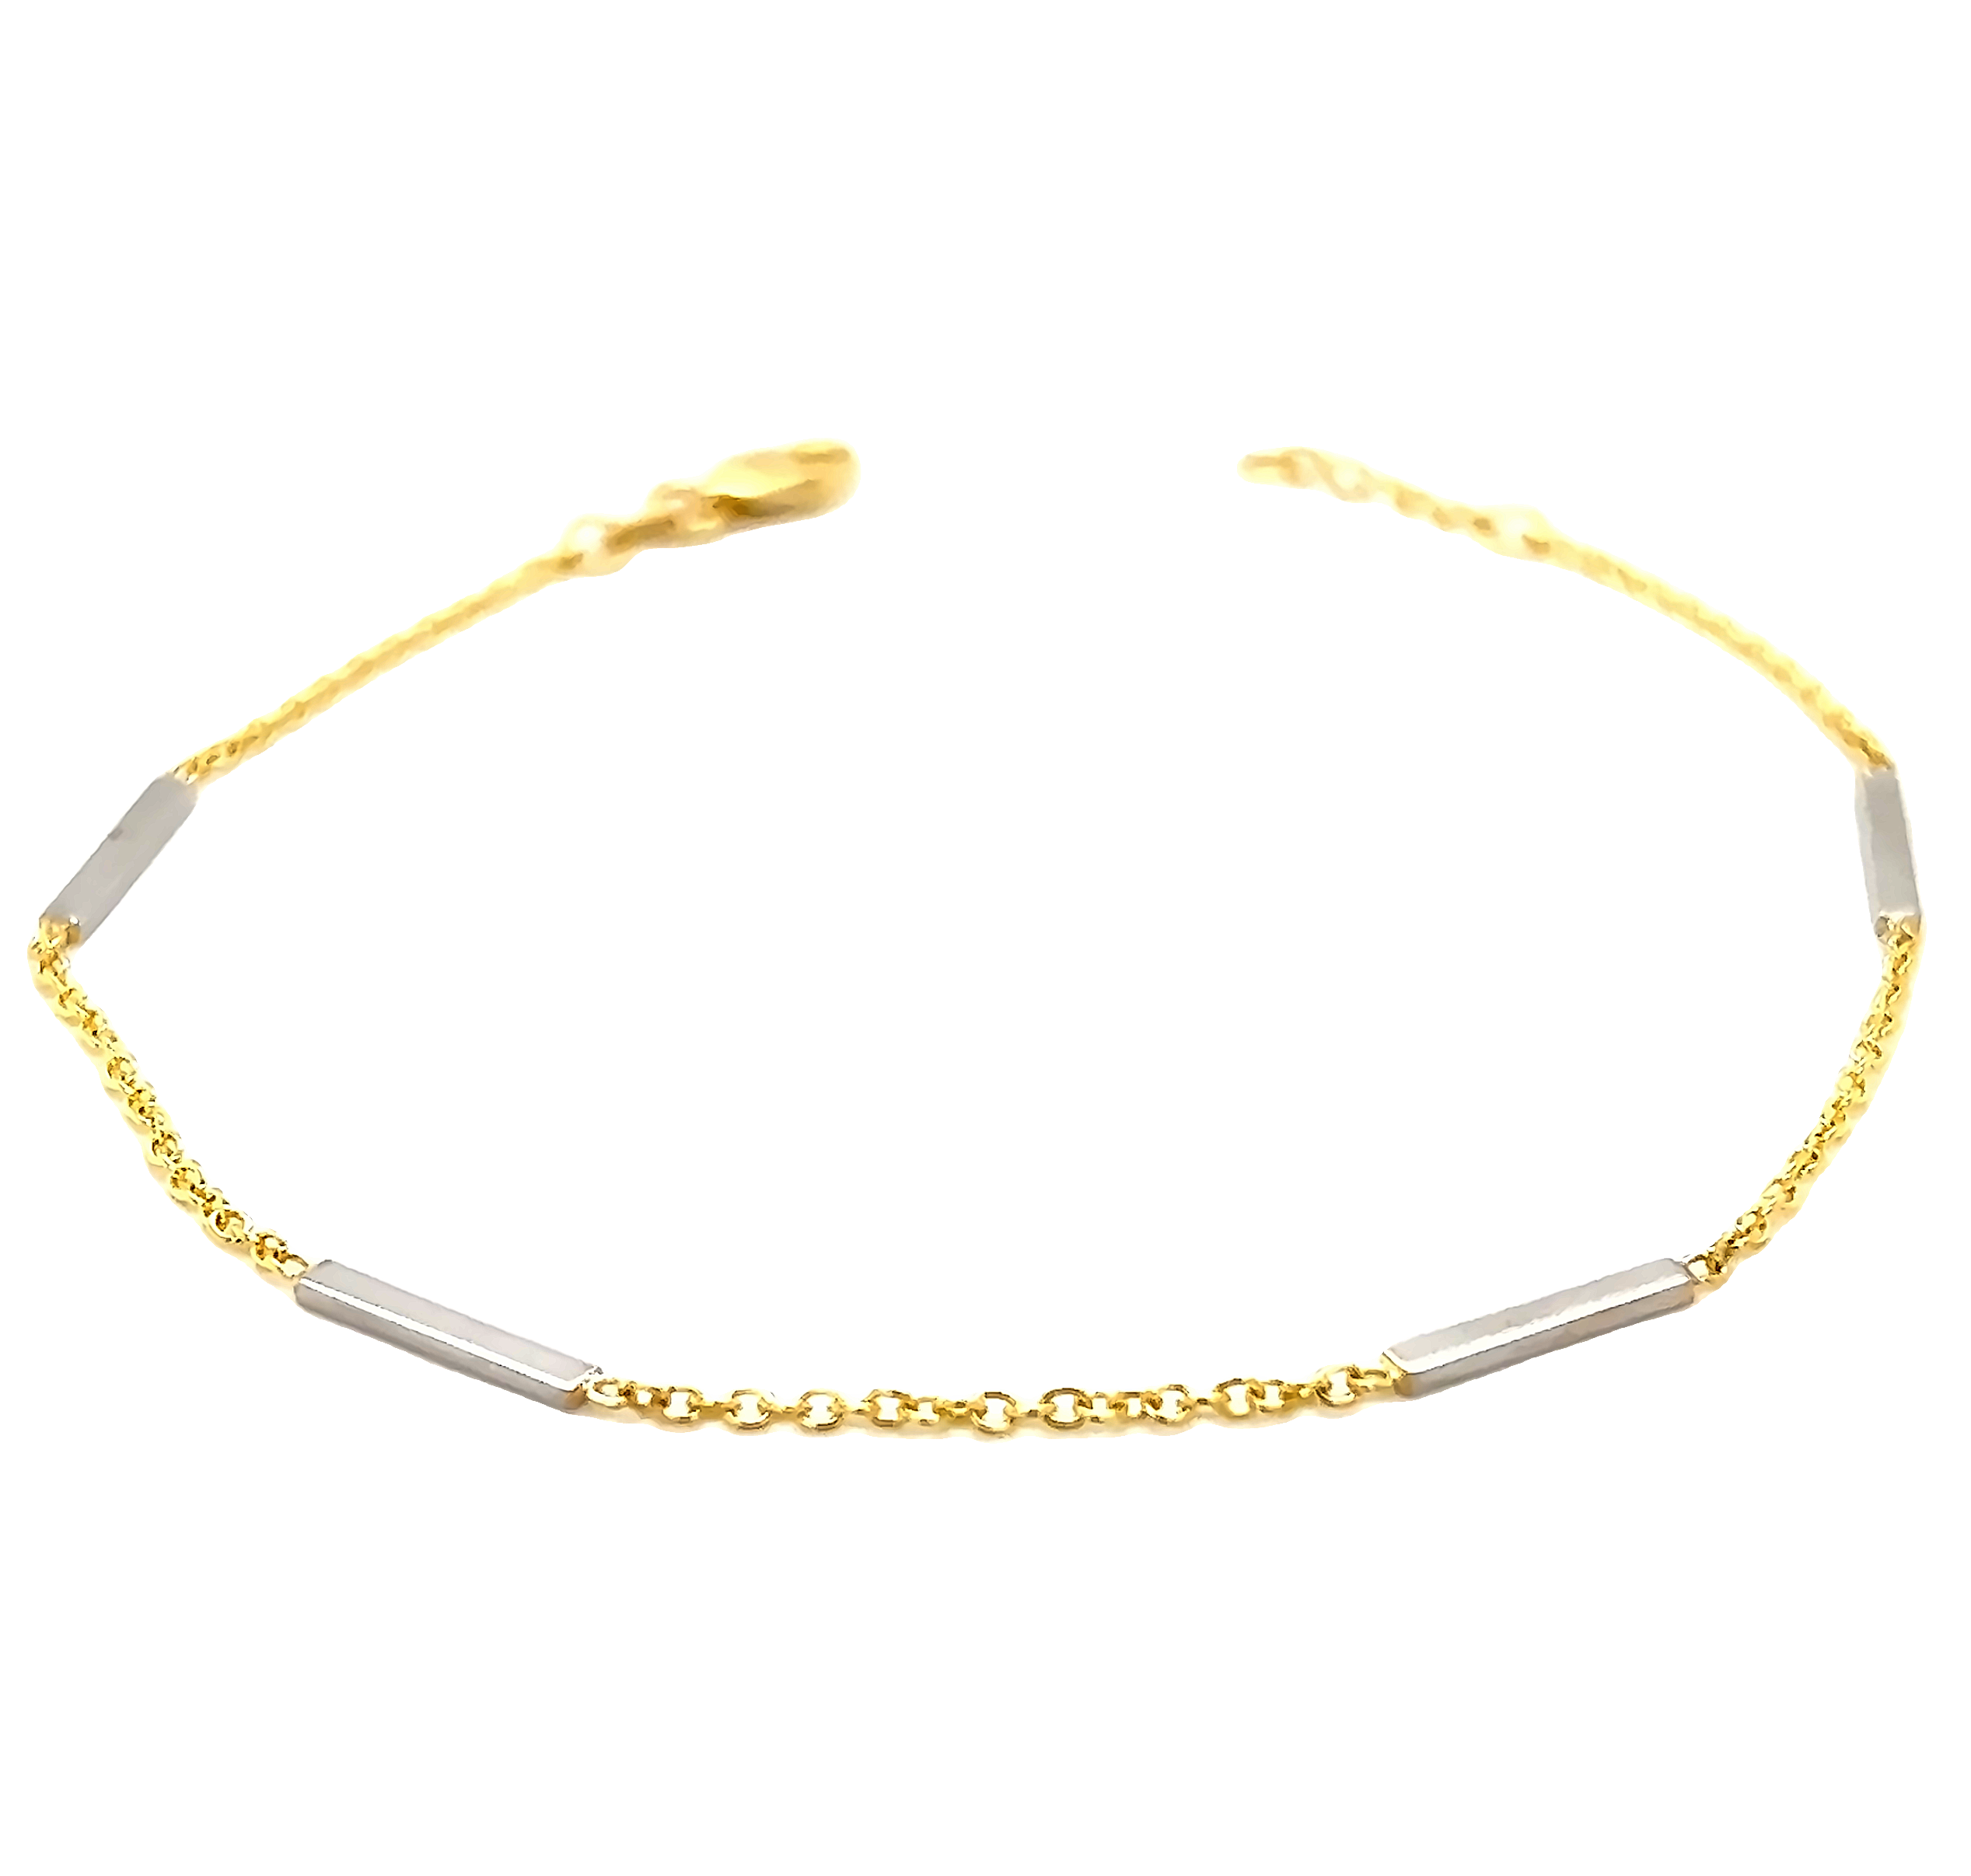 14 karat yellow gold bracelet with 14 karat white gold bars.